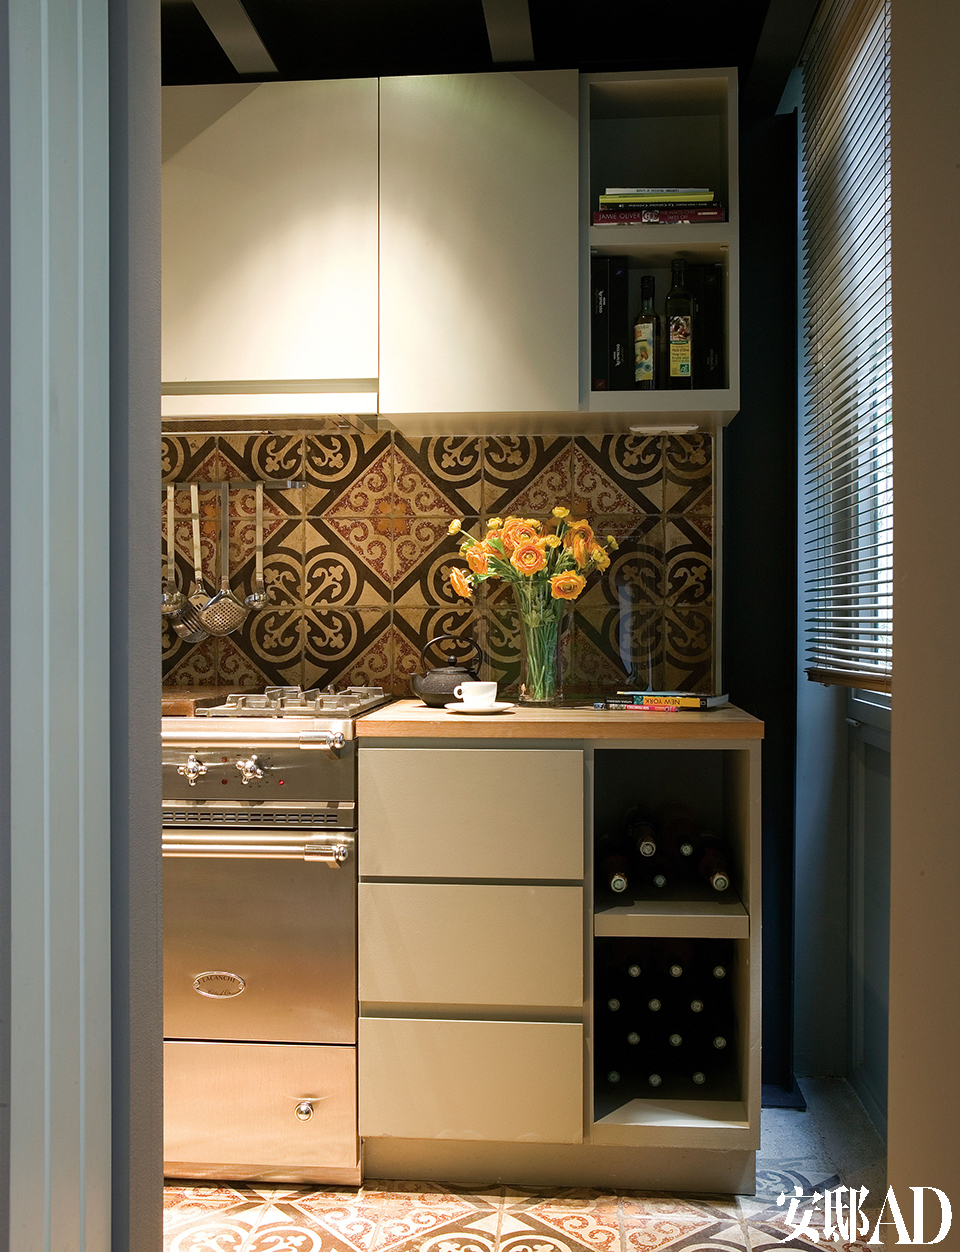 厨房中配置了被称为“计划美食家”的法国Lacanche炉具，墙面和地面都铺装了来自Uzes的普罗旺斯风格XVIeme瓷砖。